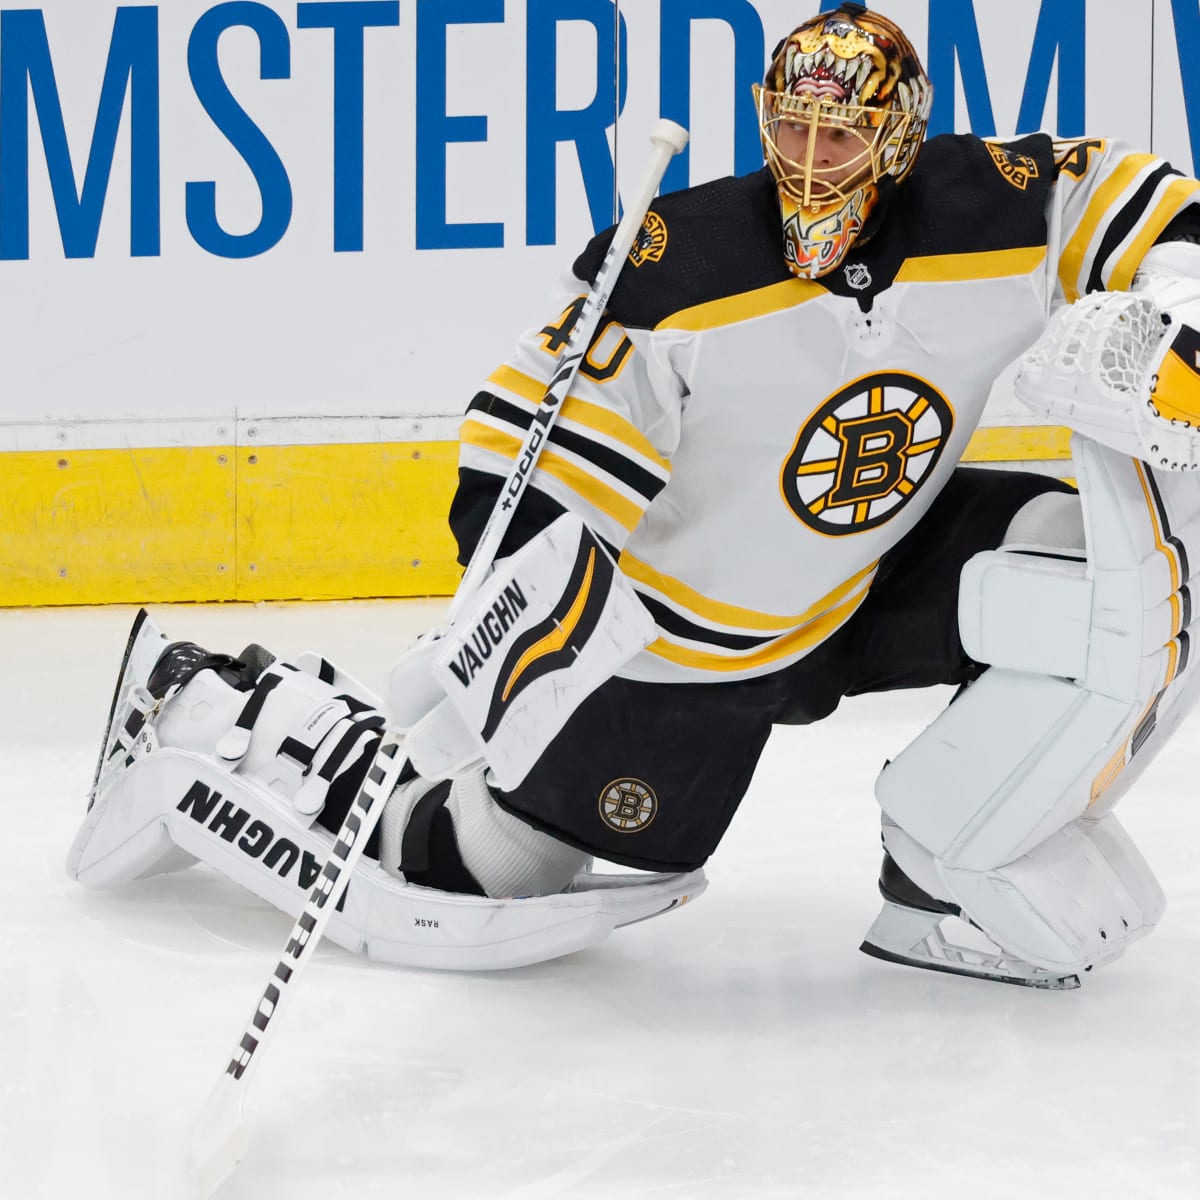 Longtime Bruins goalie Tuukka Rask retires from NHL